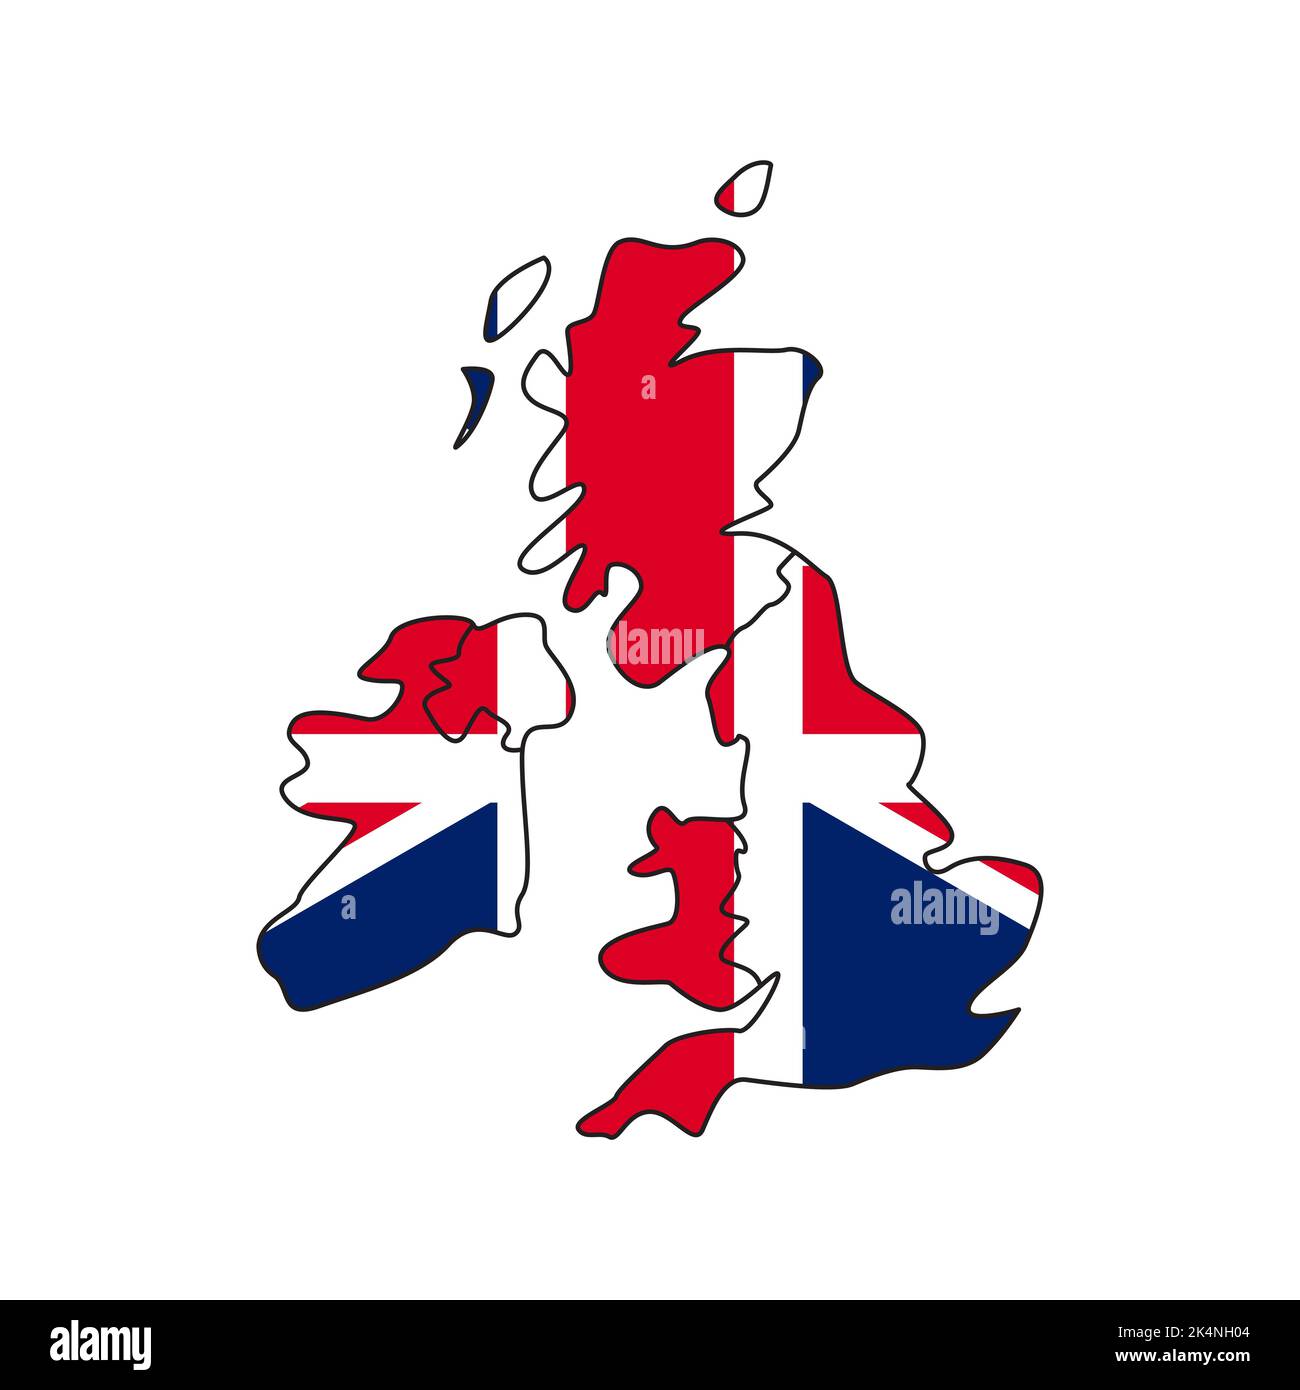 Bandiera della Gran Bretagna Illustrazione Vettoriale